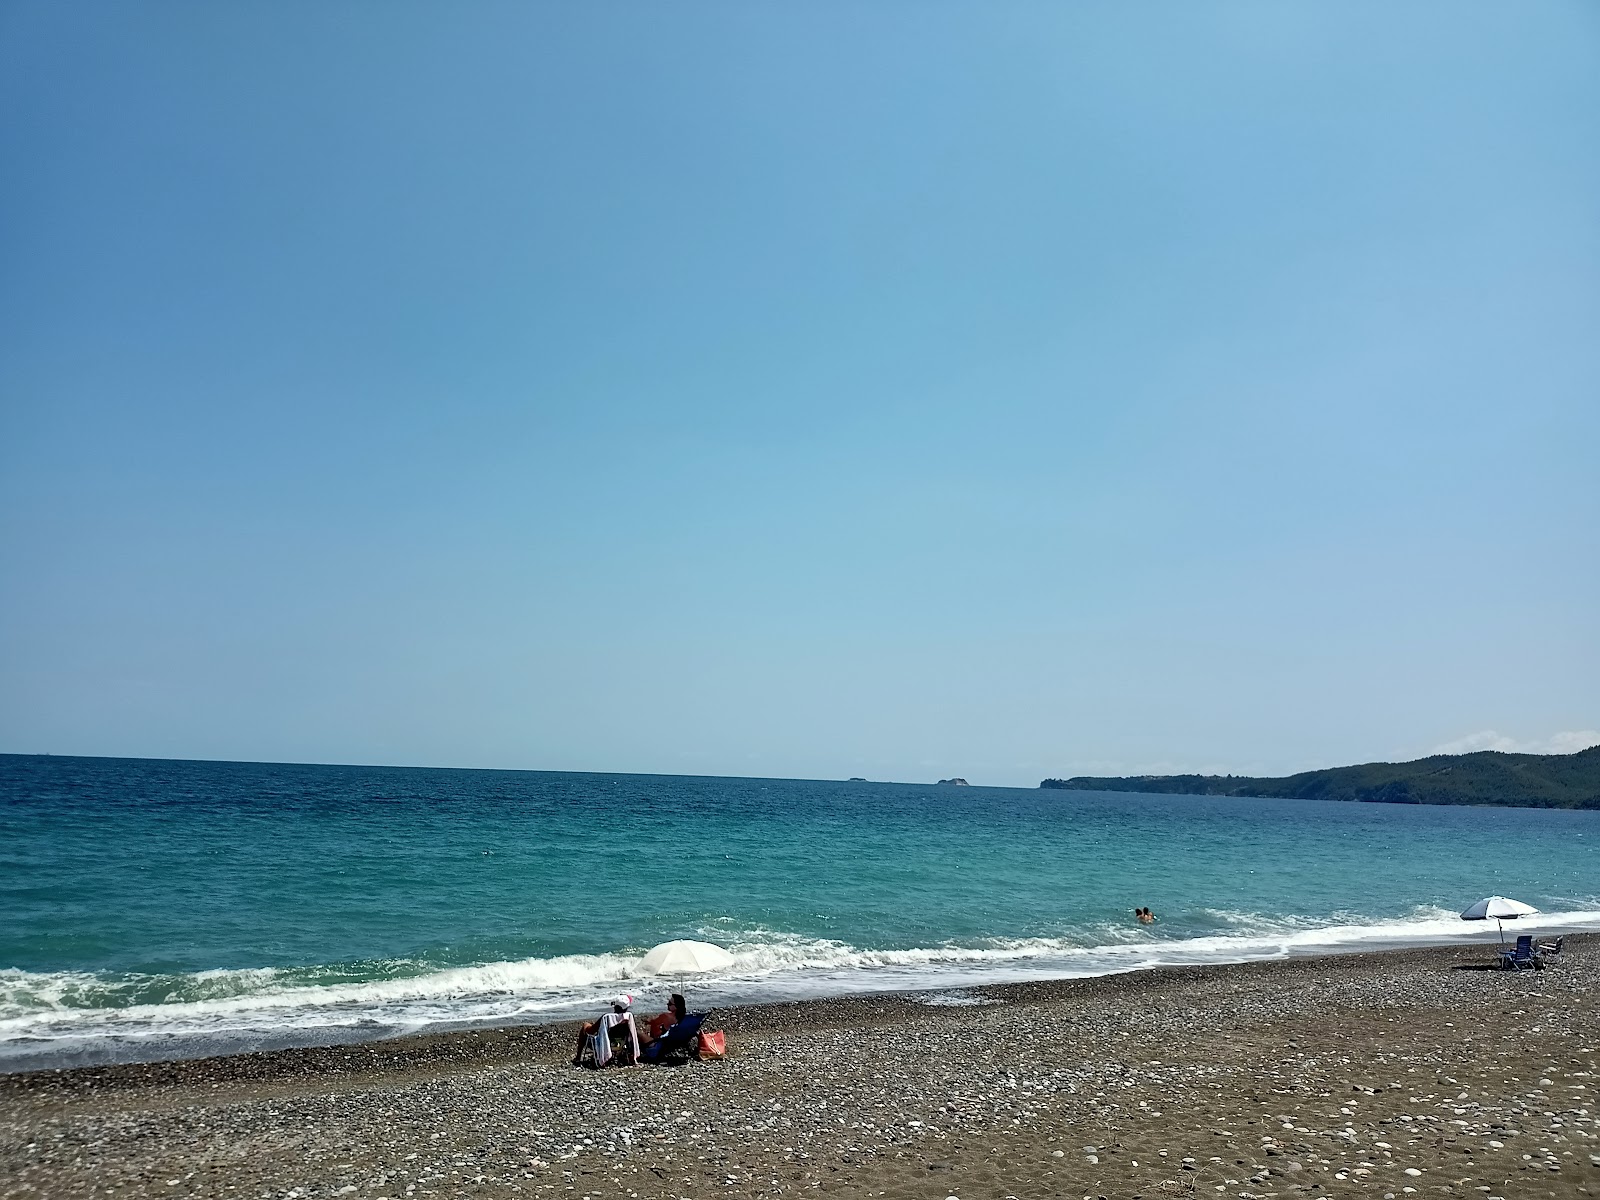 Elinika beach'in fotoğrafı kısmen temiz temizlik seviyesi ile